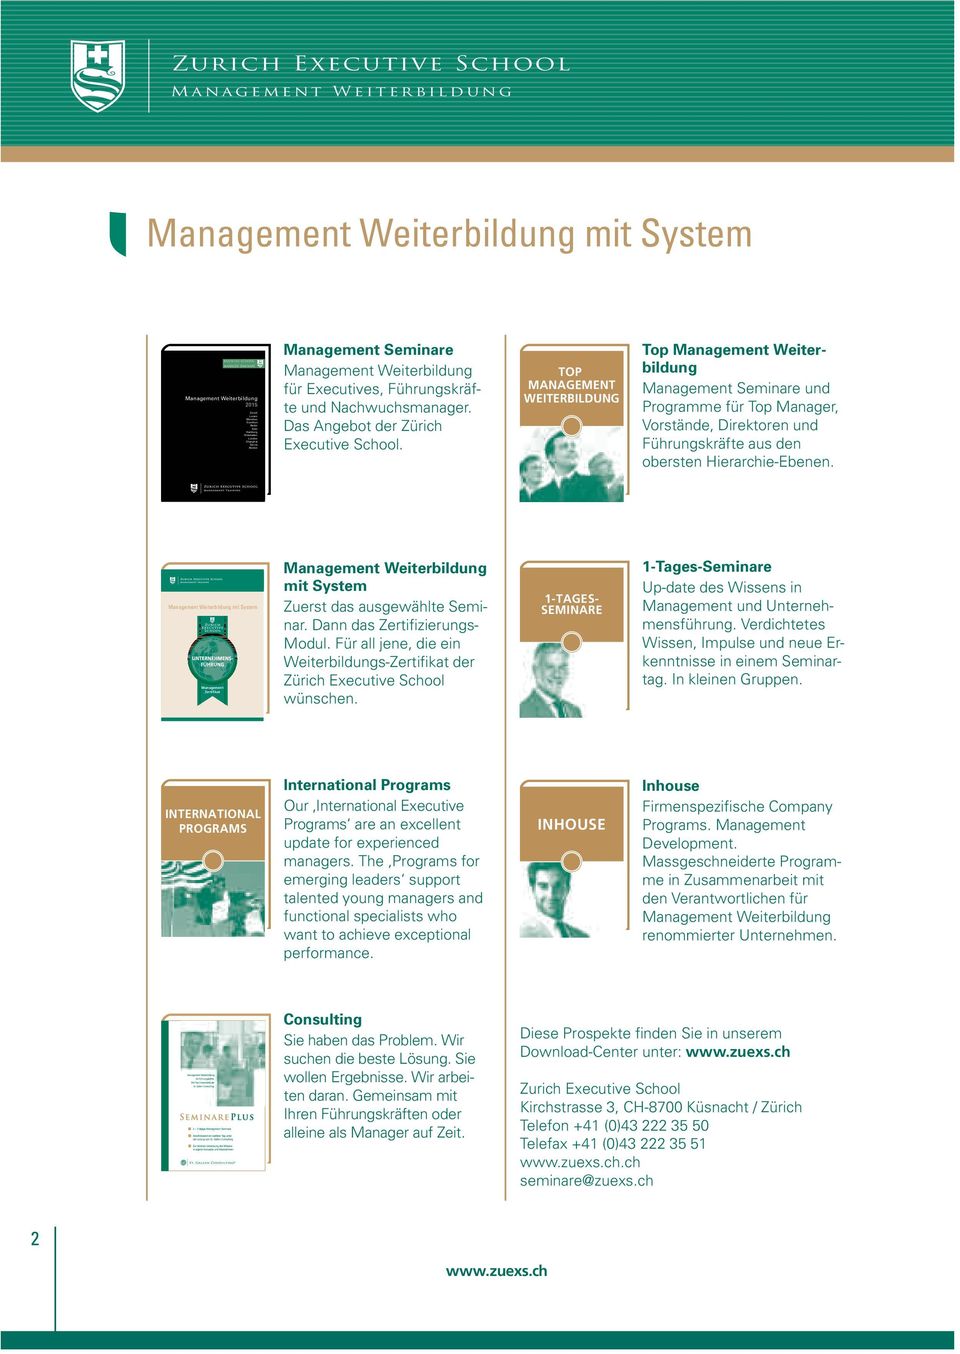 TOP MANAGEMENT WEITERBILDUNG Top Management Weiter - bildung Management Seminare und Programme für Top Manager, Vorstände, Direktoren und Führungskräfte aus den obersten Hierarchie-Ebenen.